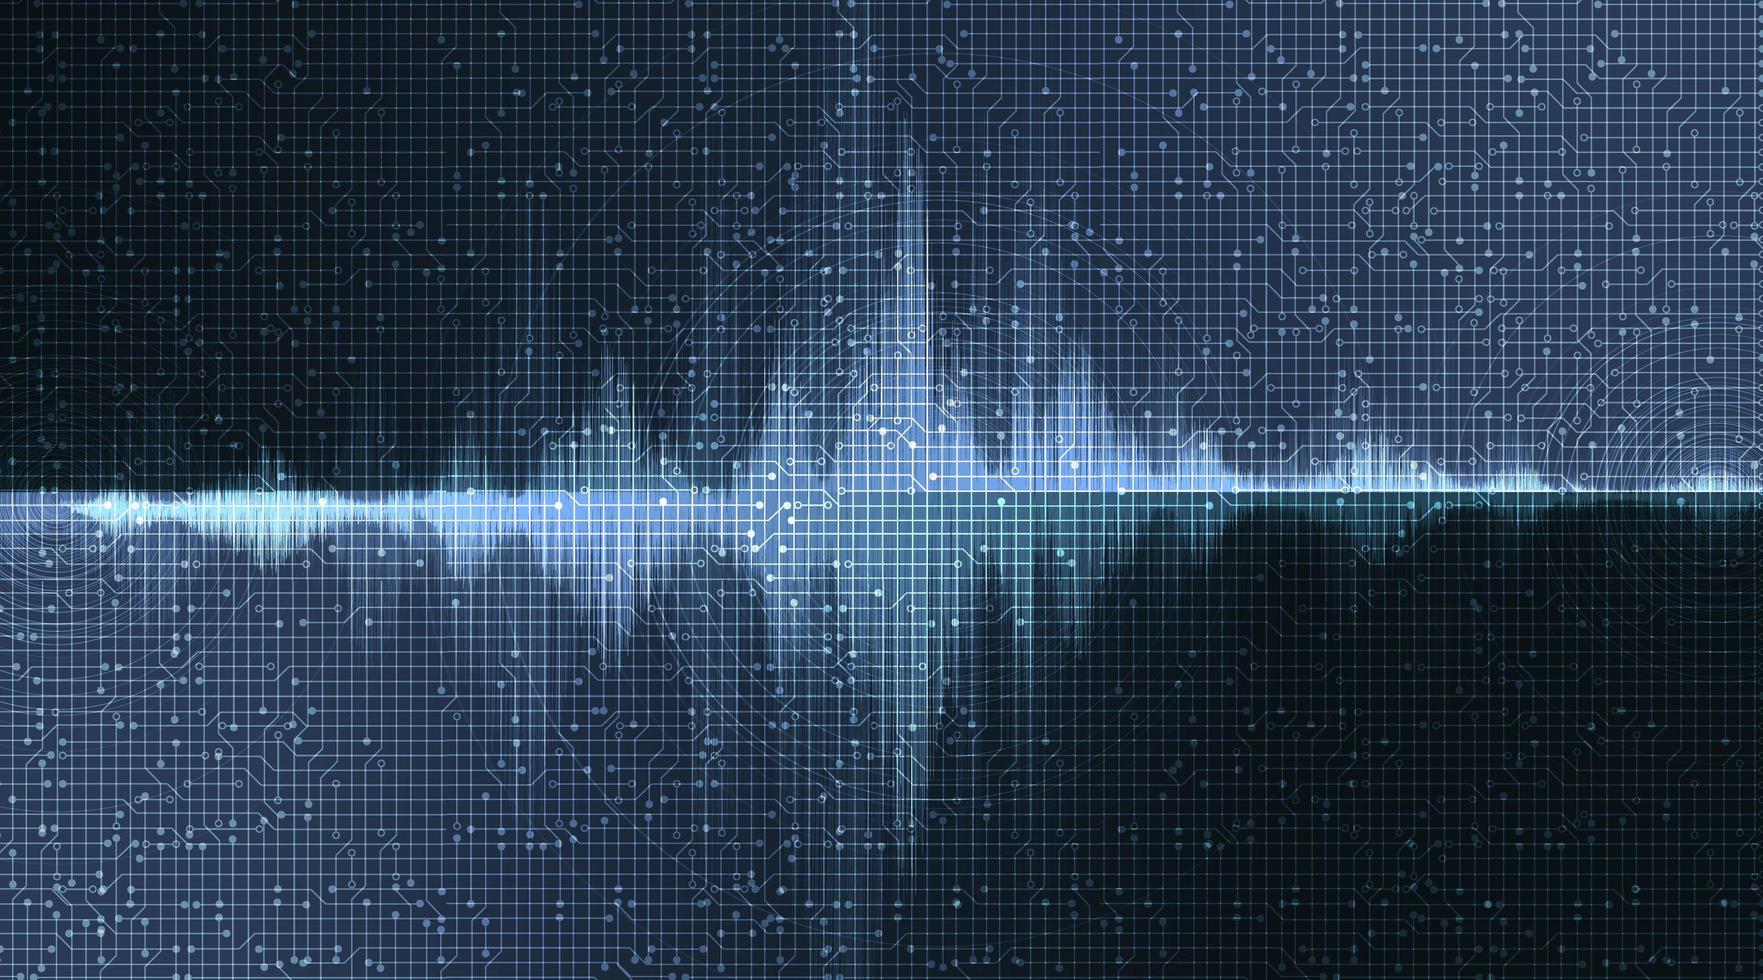 digital ljudvåg på mörkblå bakgrund, teknik och jordbävningsvågdiagramkoncept vektor